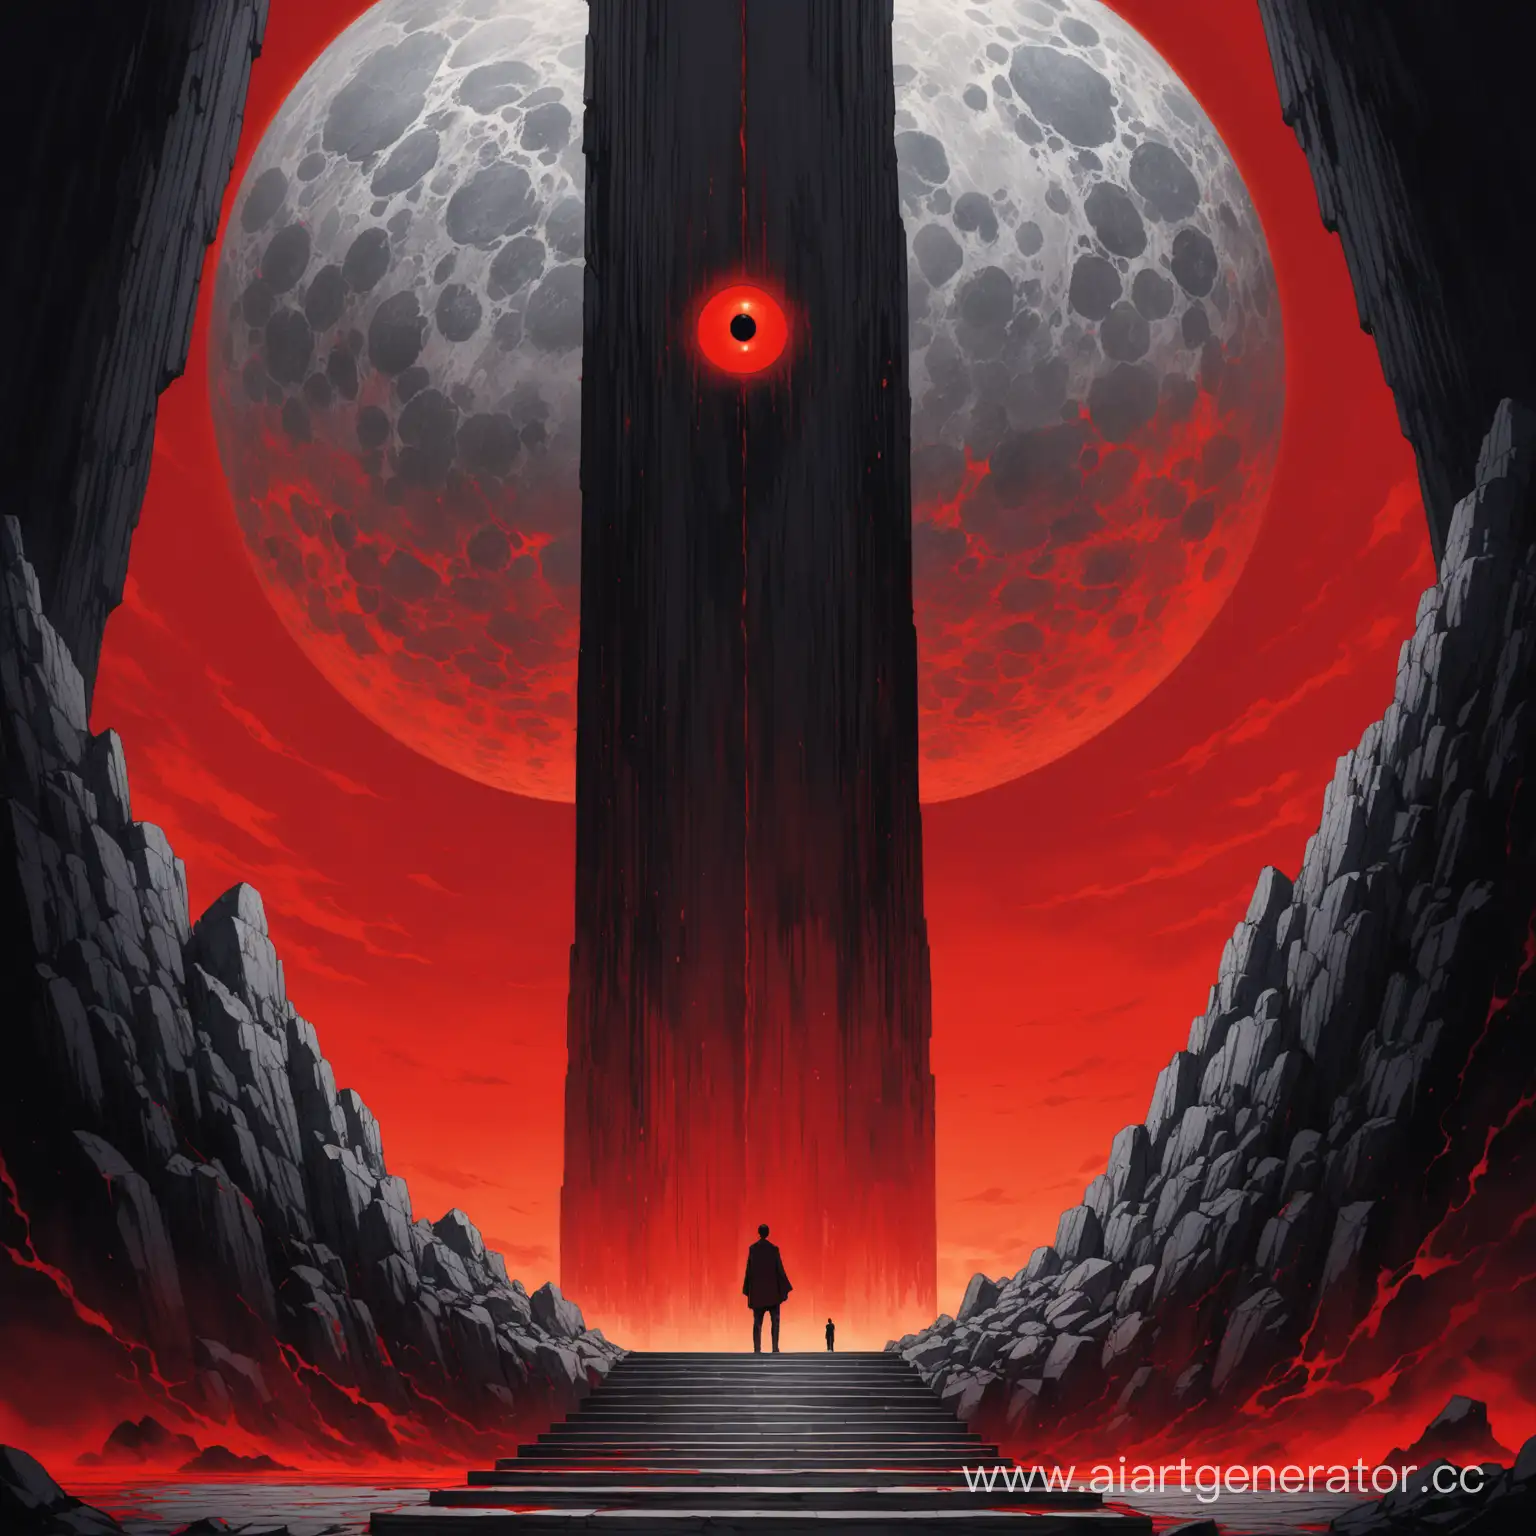 
一名男性站立在两根矗立的灰黑色花岗岩石柱旁边，石柱中间有密密麻麻的阶梯，一直延伸到天空，背景为血红的巨眼
